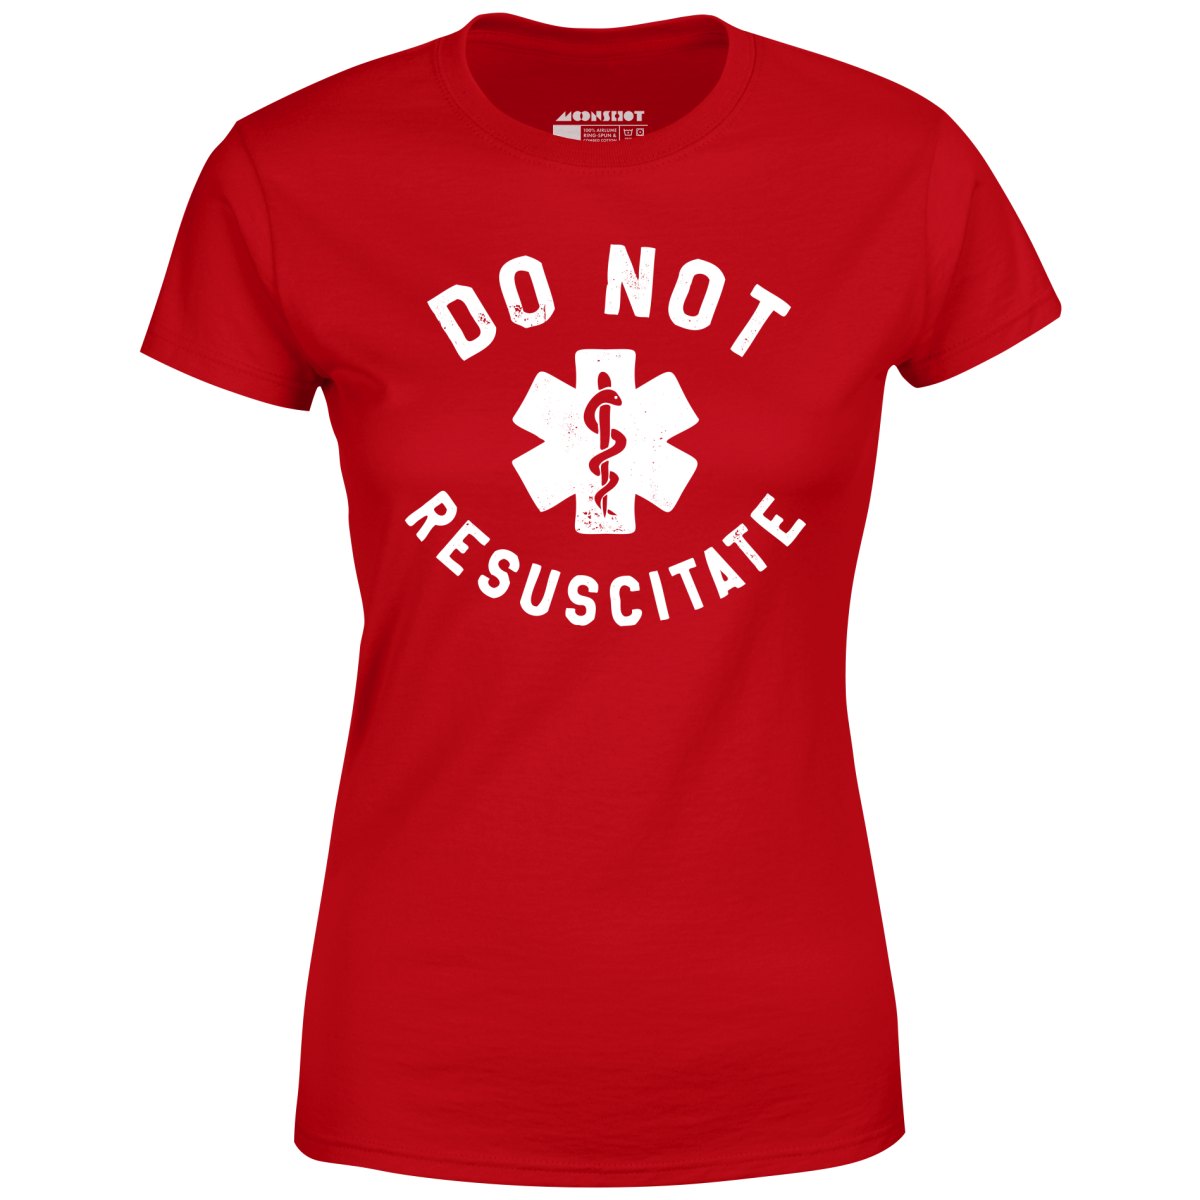 Do Not Resuscitate - Women's T-Shirt